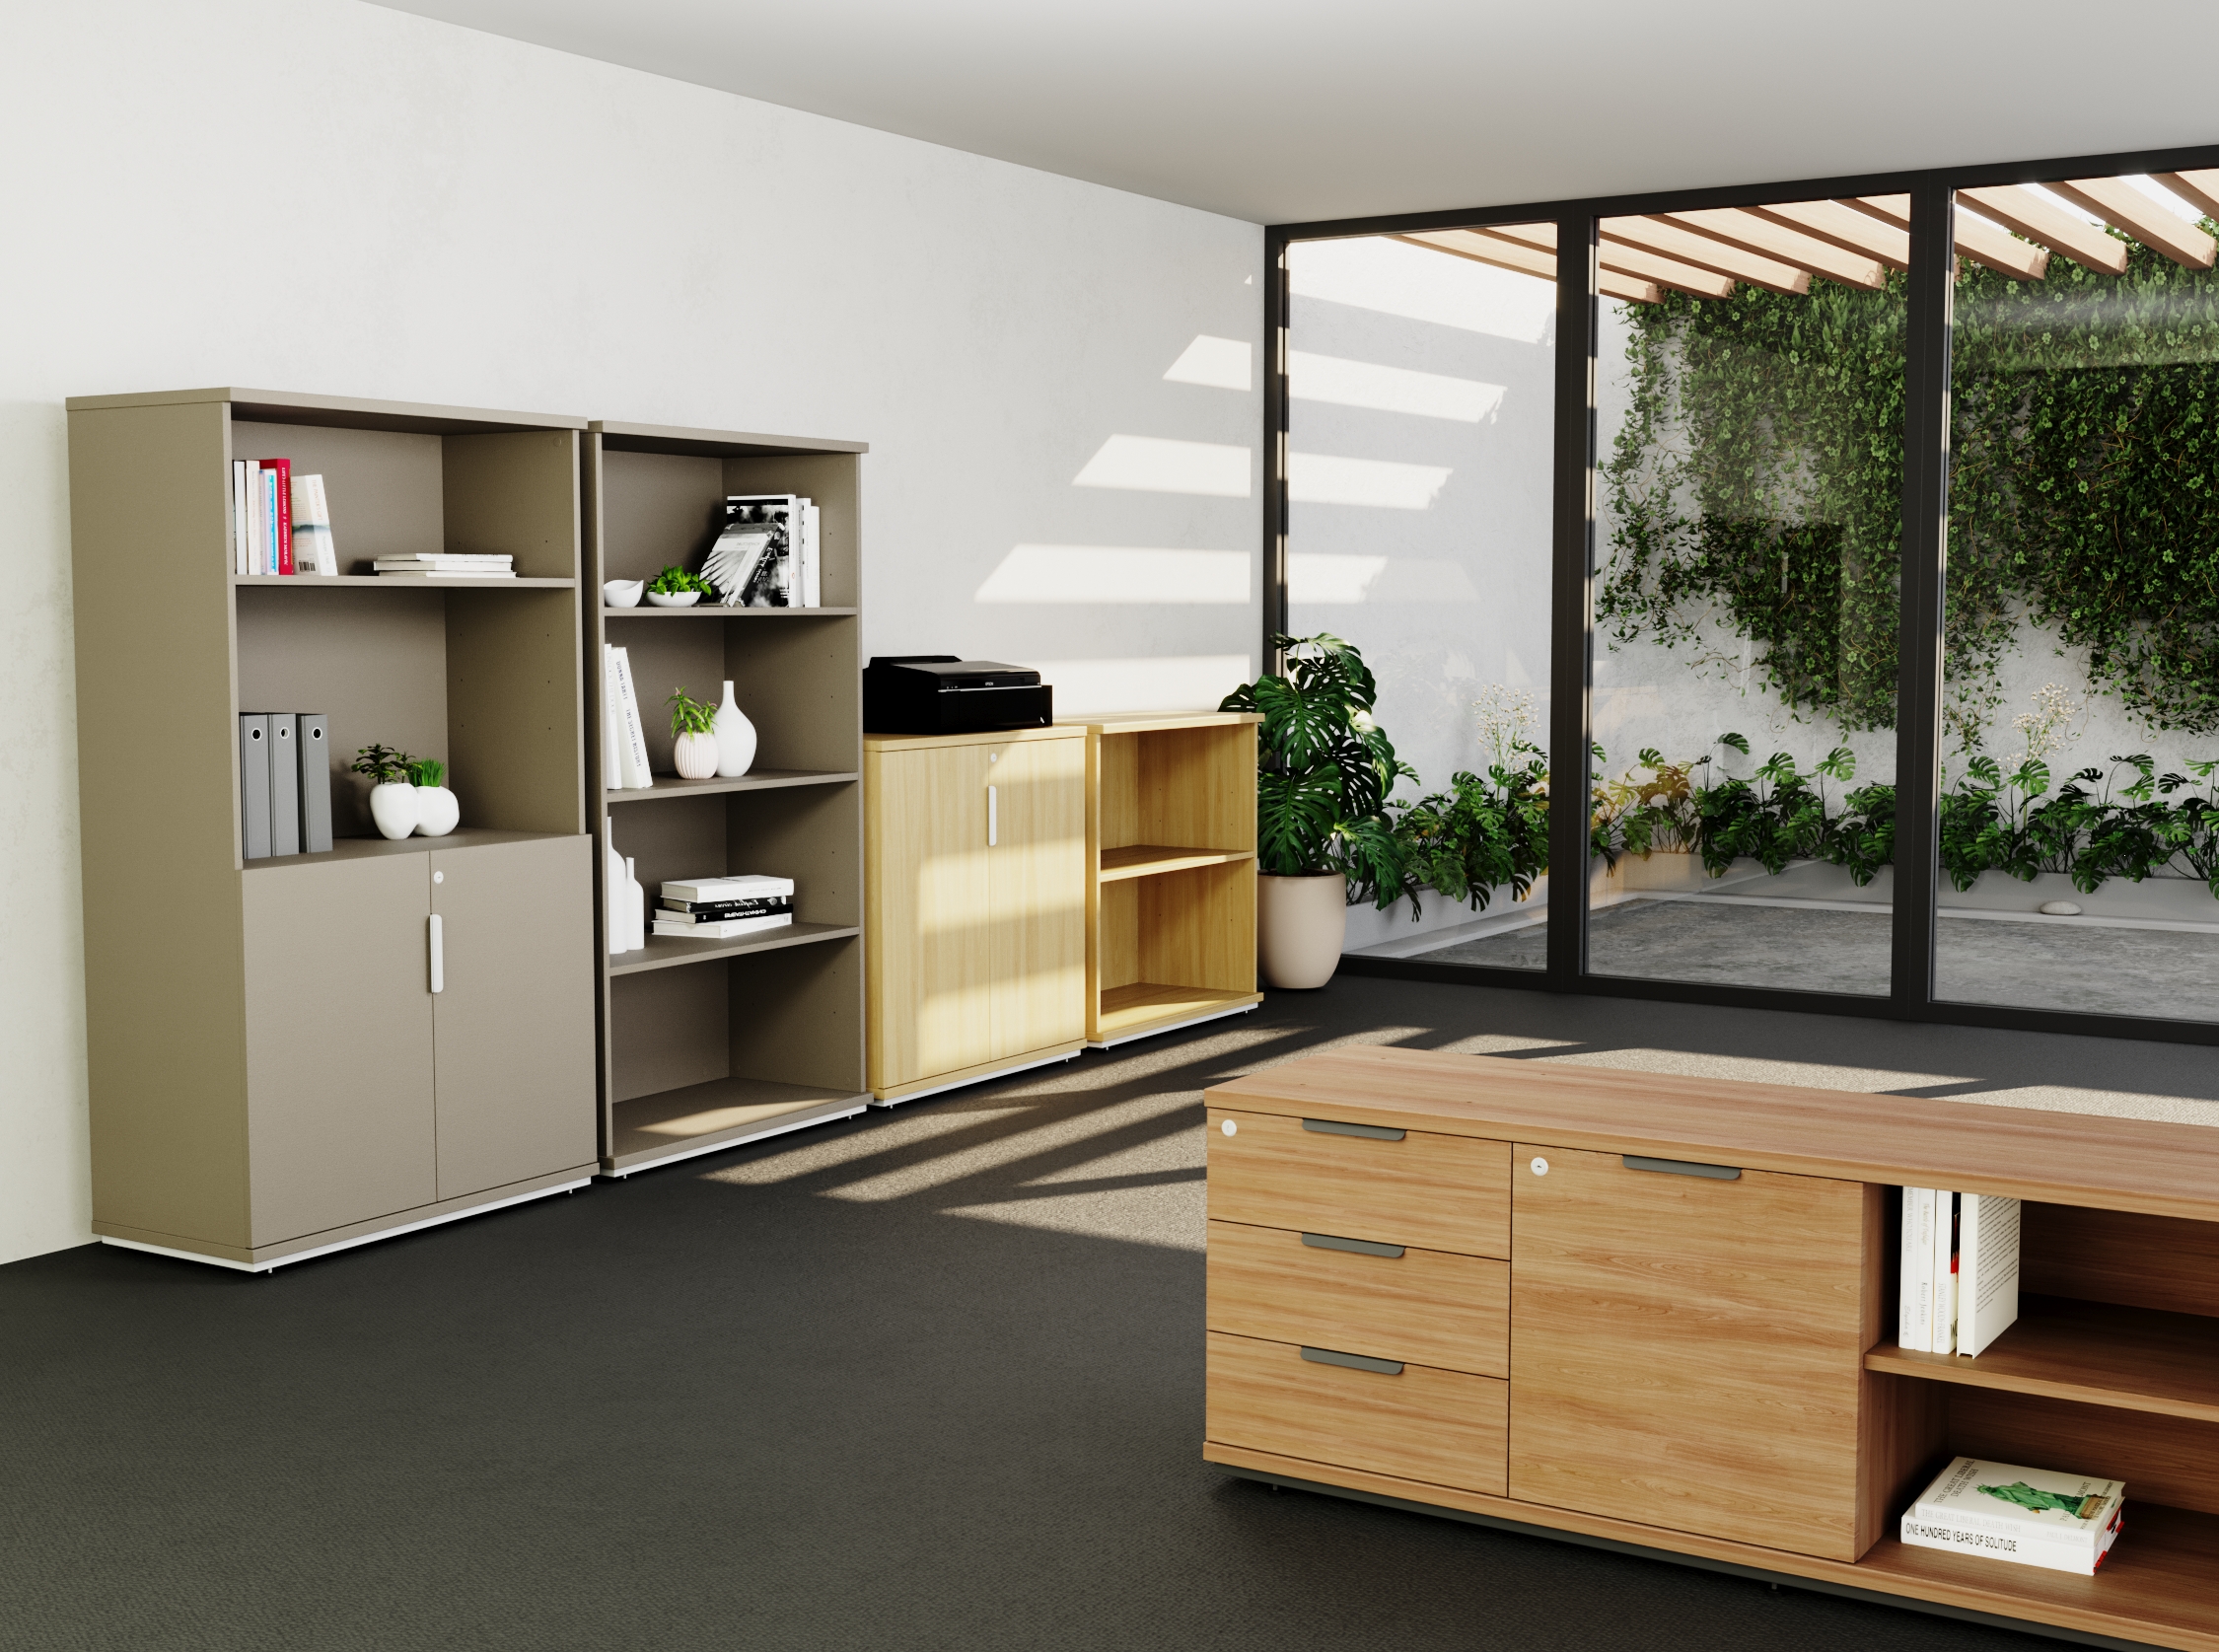 ambiente de trabalho com armários, agregado à um espaço externo com plantas